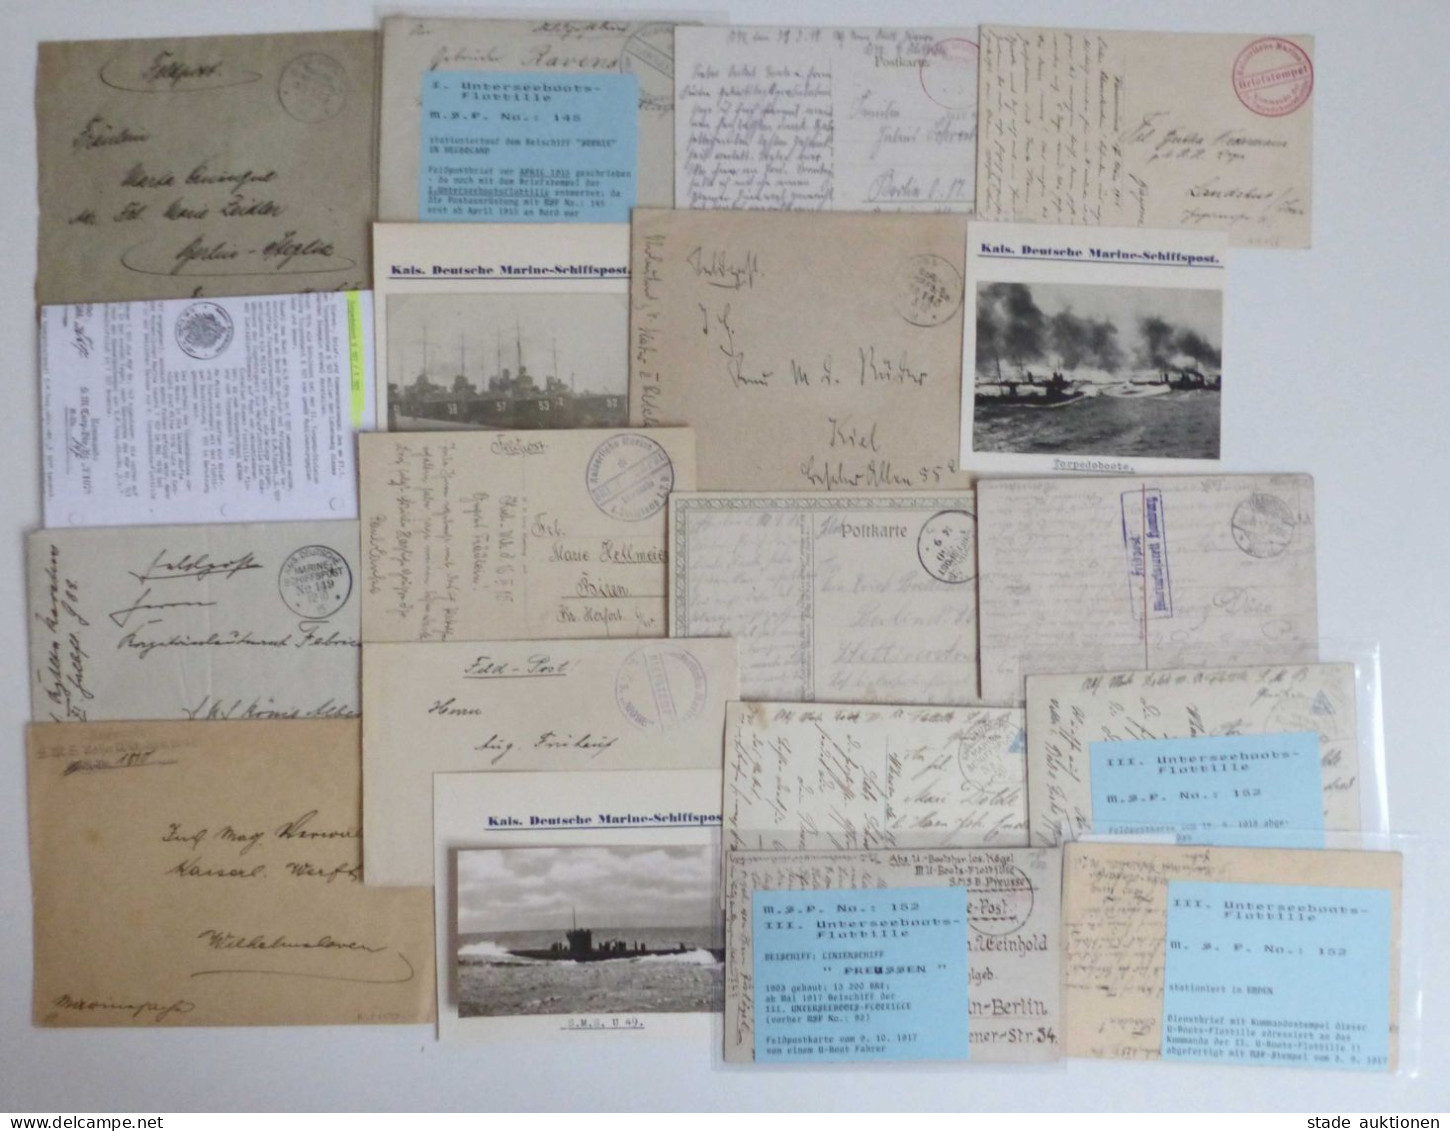 Deutsche Marine Schiffspost Sammlung bis ca. 1918 umfangreich mit hunderten Belegen u. Postkarten in 3 Kartons, teilweis